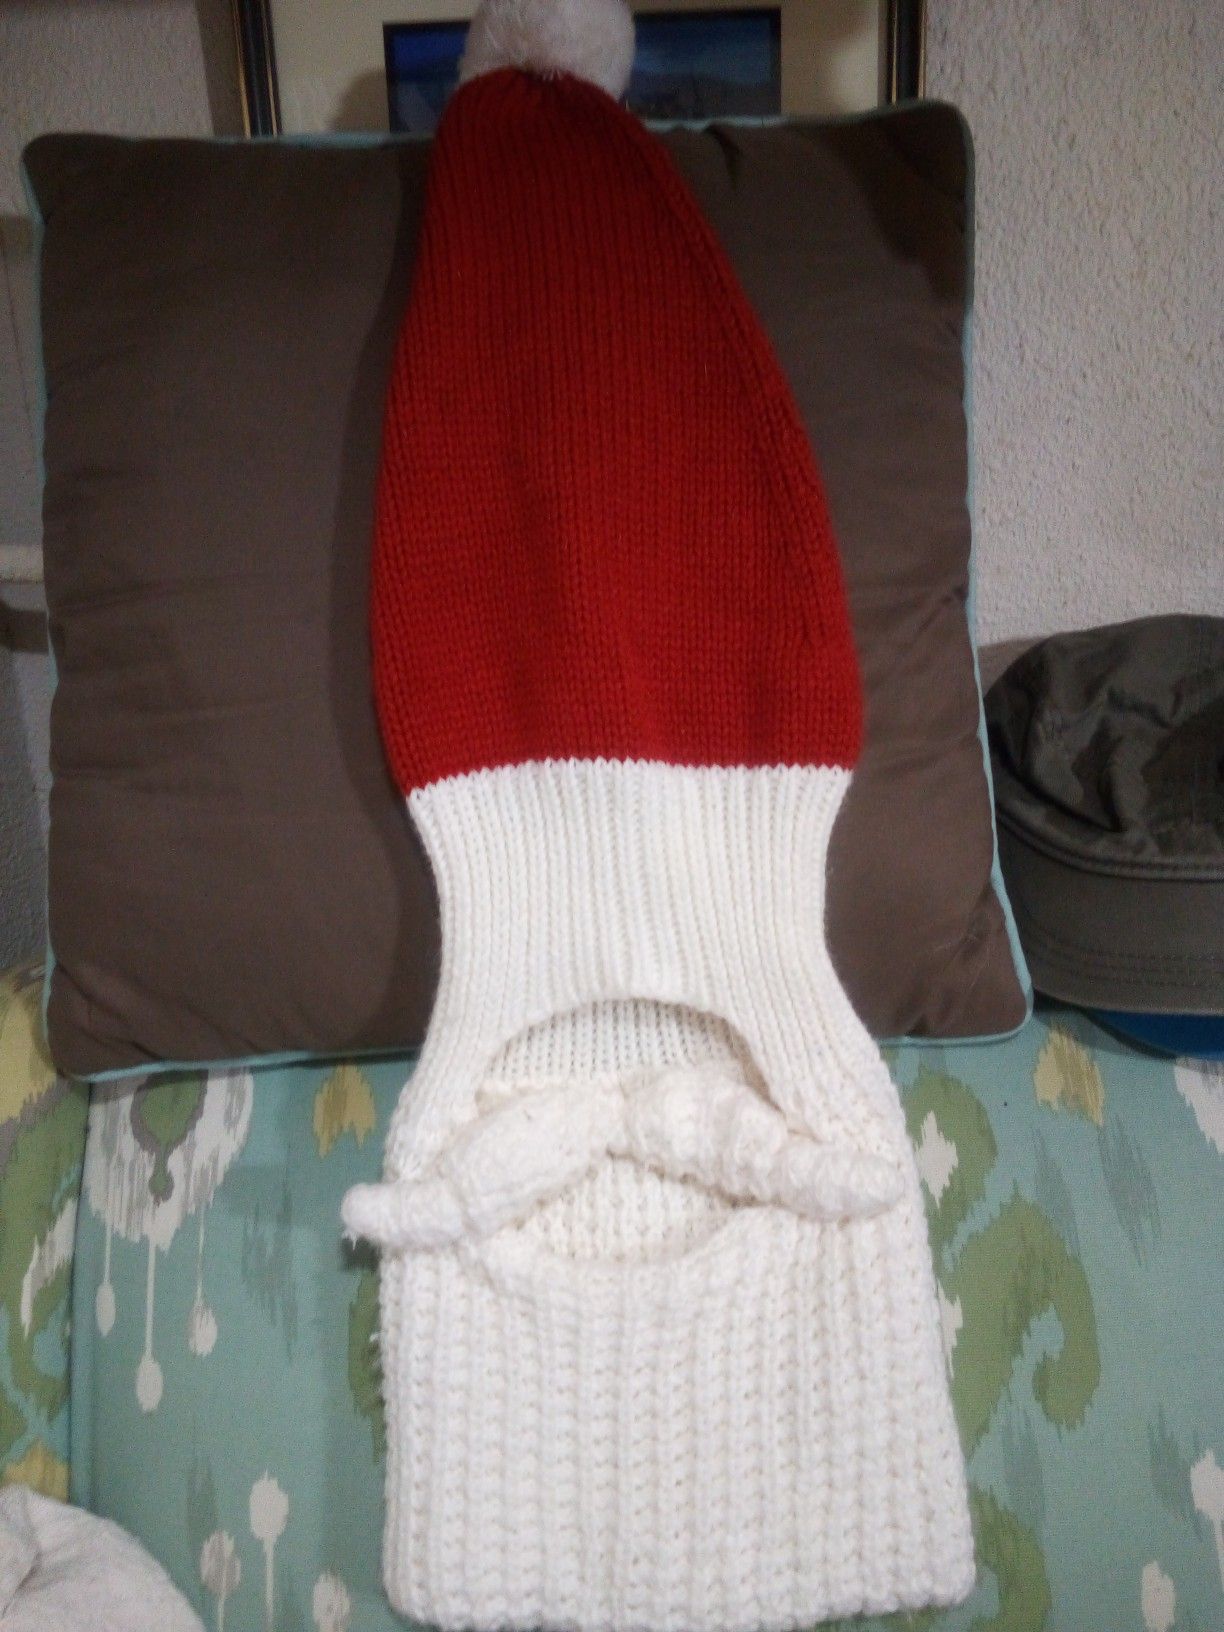 Santa's beard knit beanie